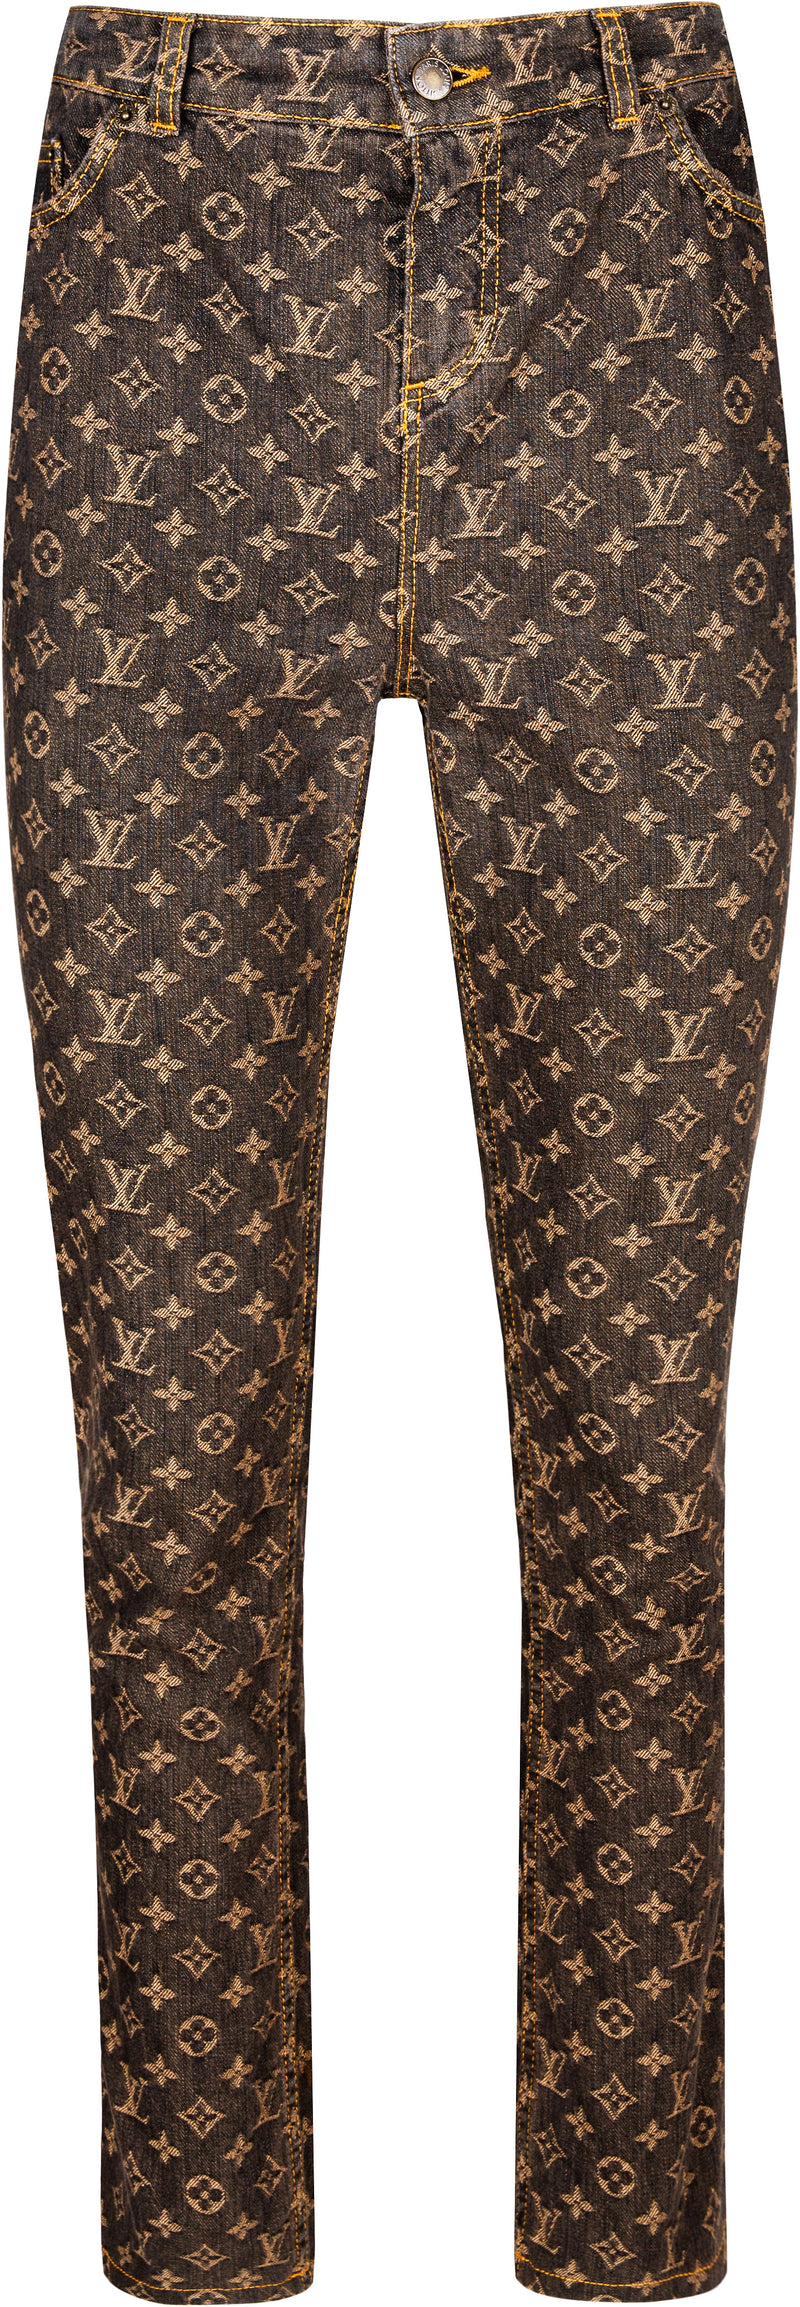 Louis Vuitton Denim Jeans Pants 